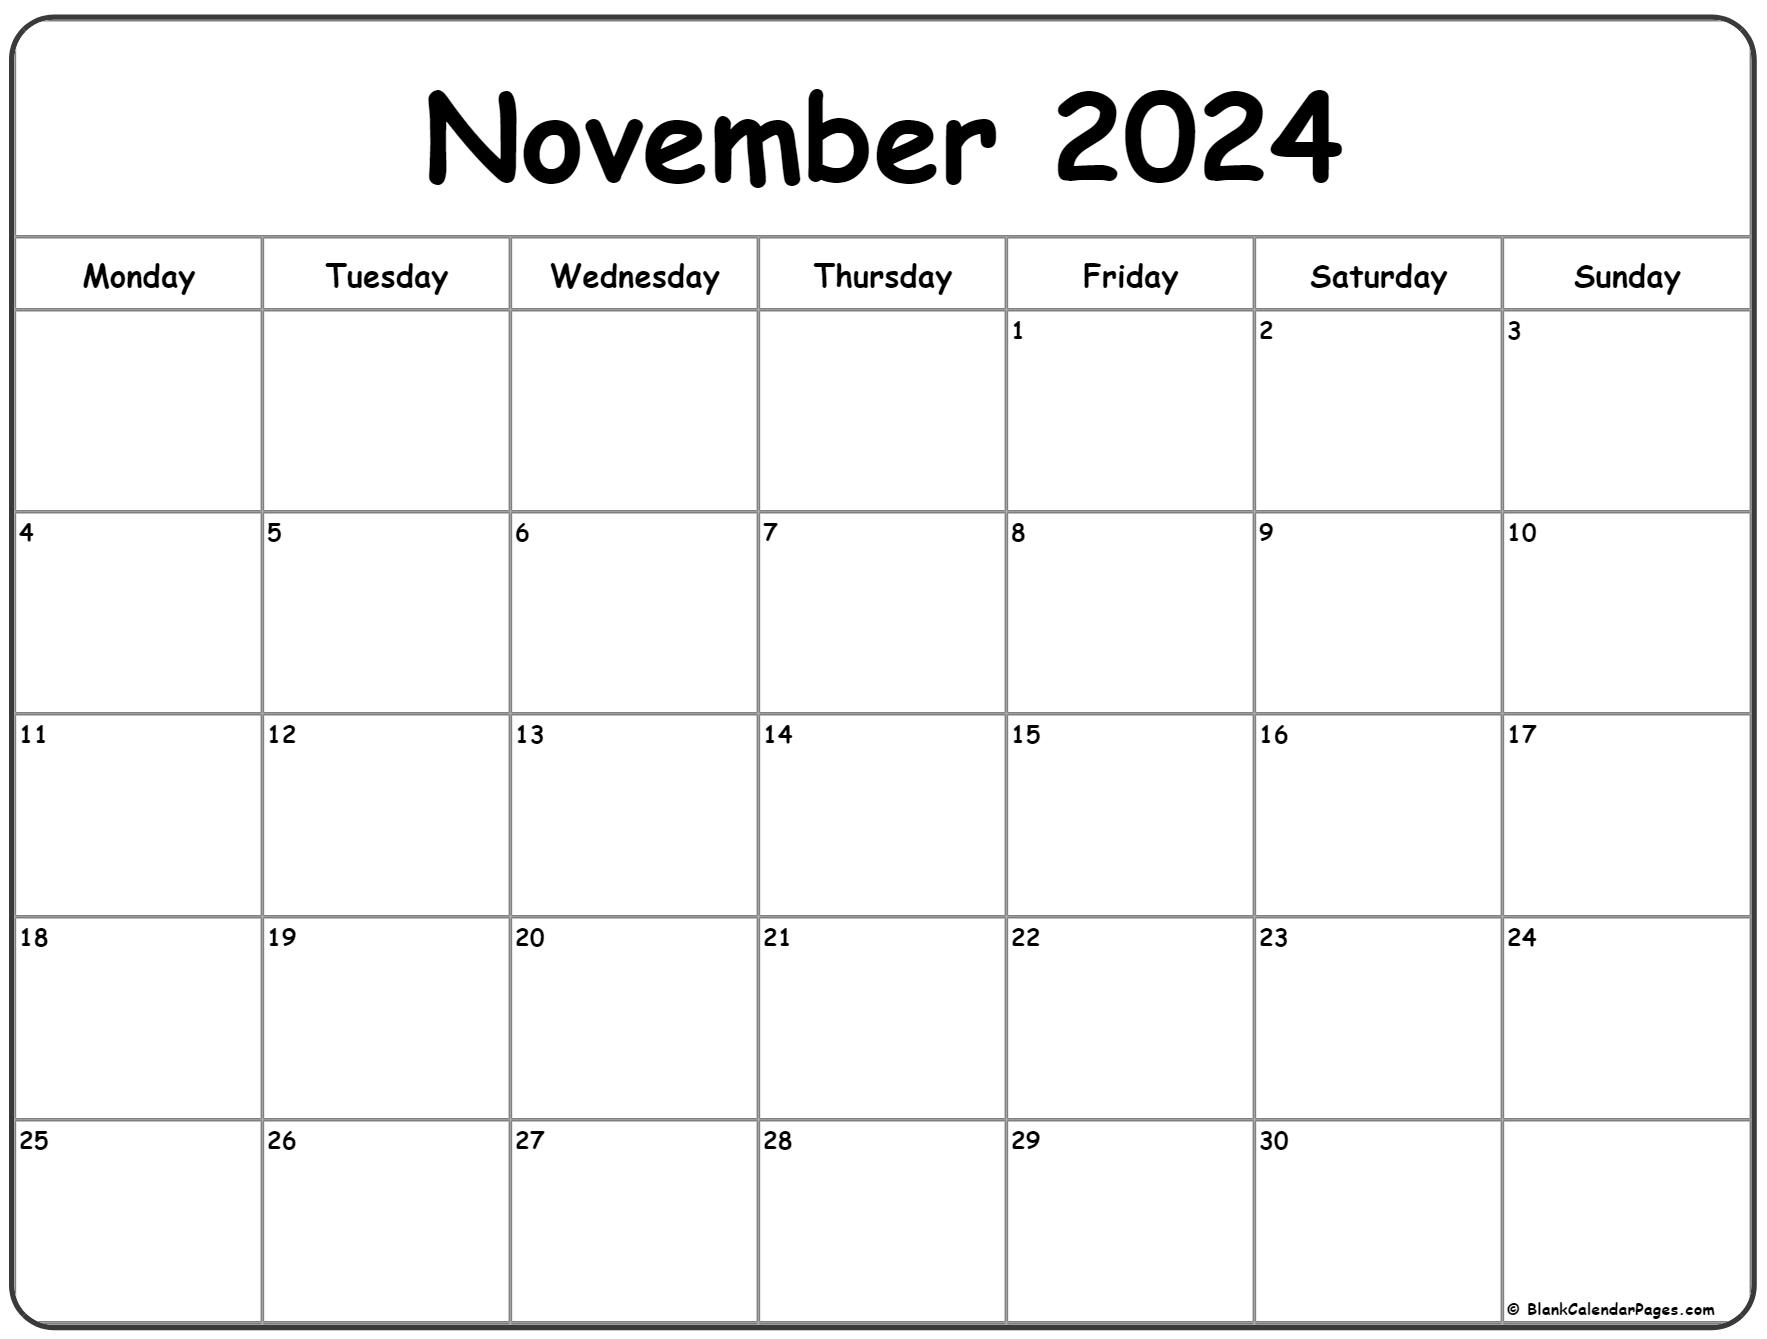 November 2024 Monday Calendar | Monday To Sunday for 2024 Printable Calendar November